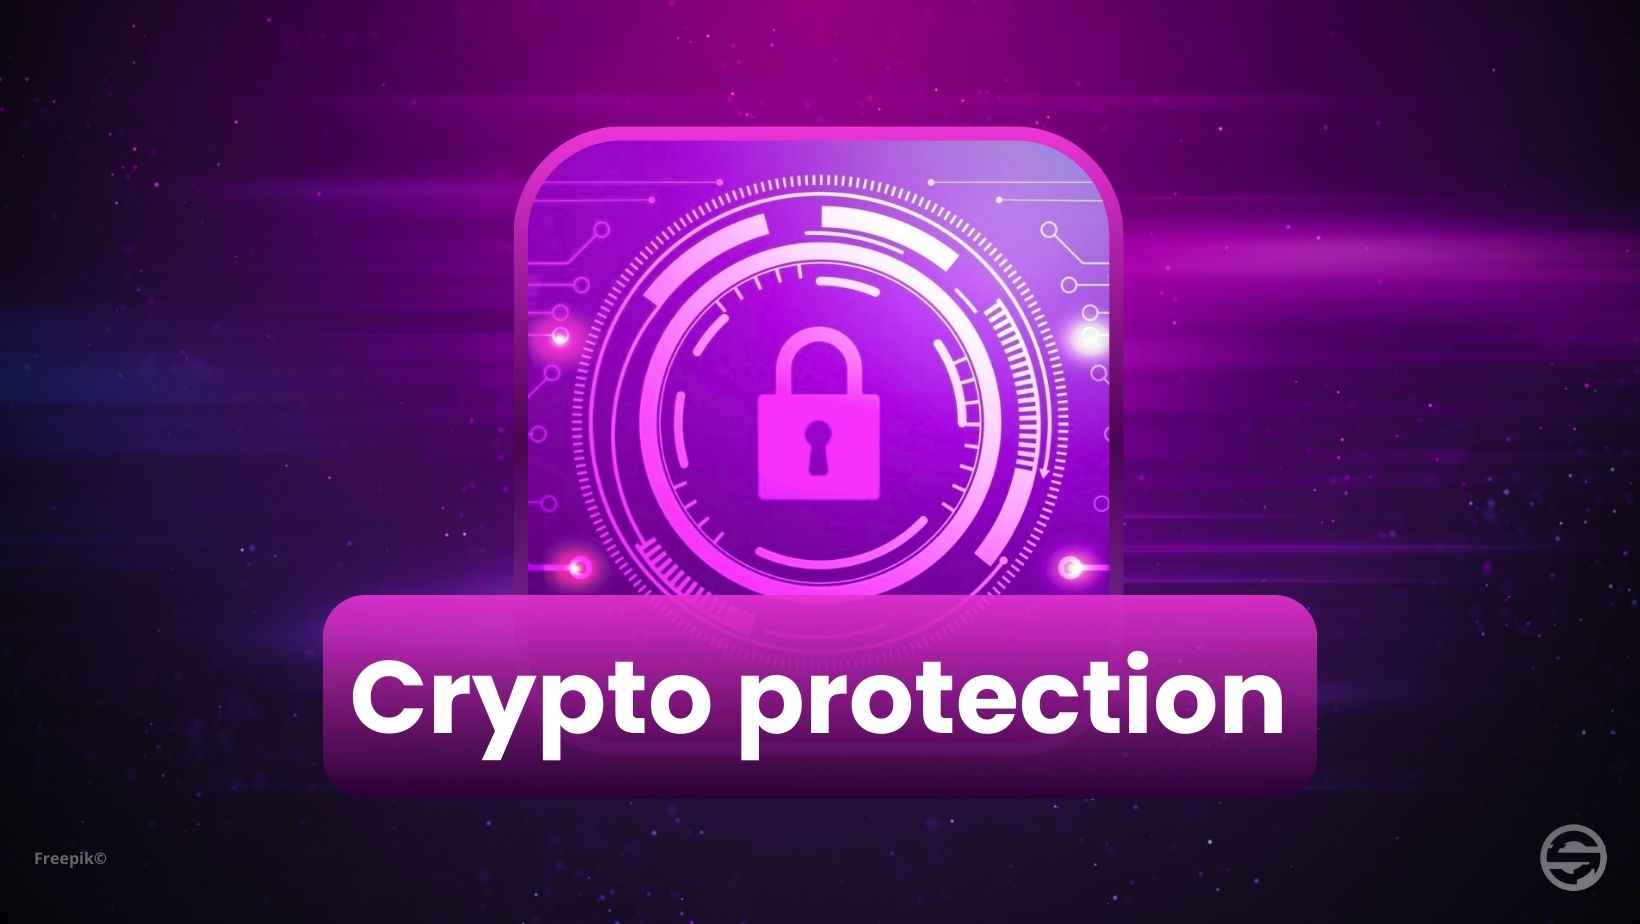 Keep your cryptos safe